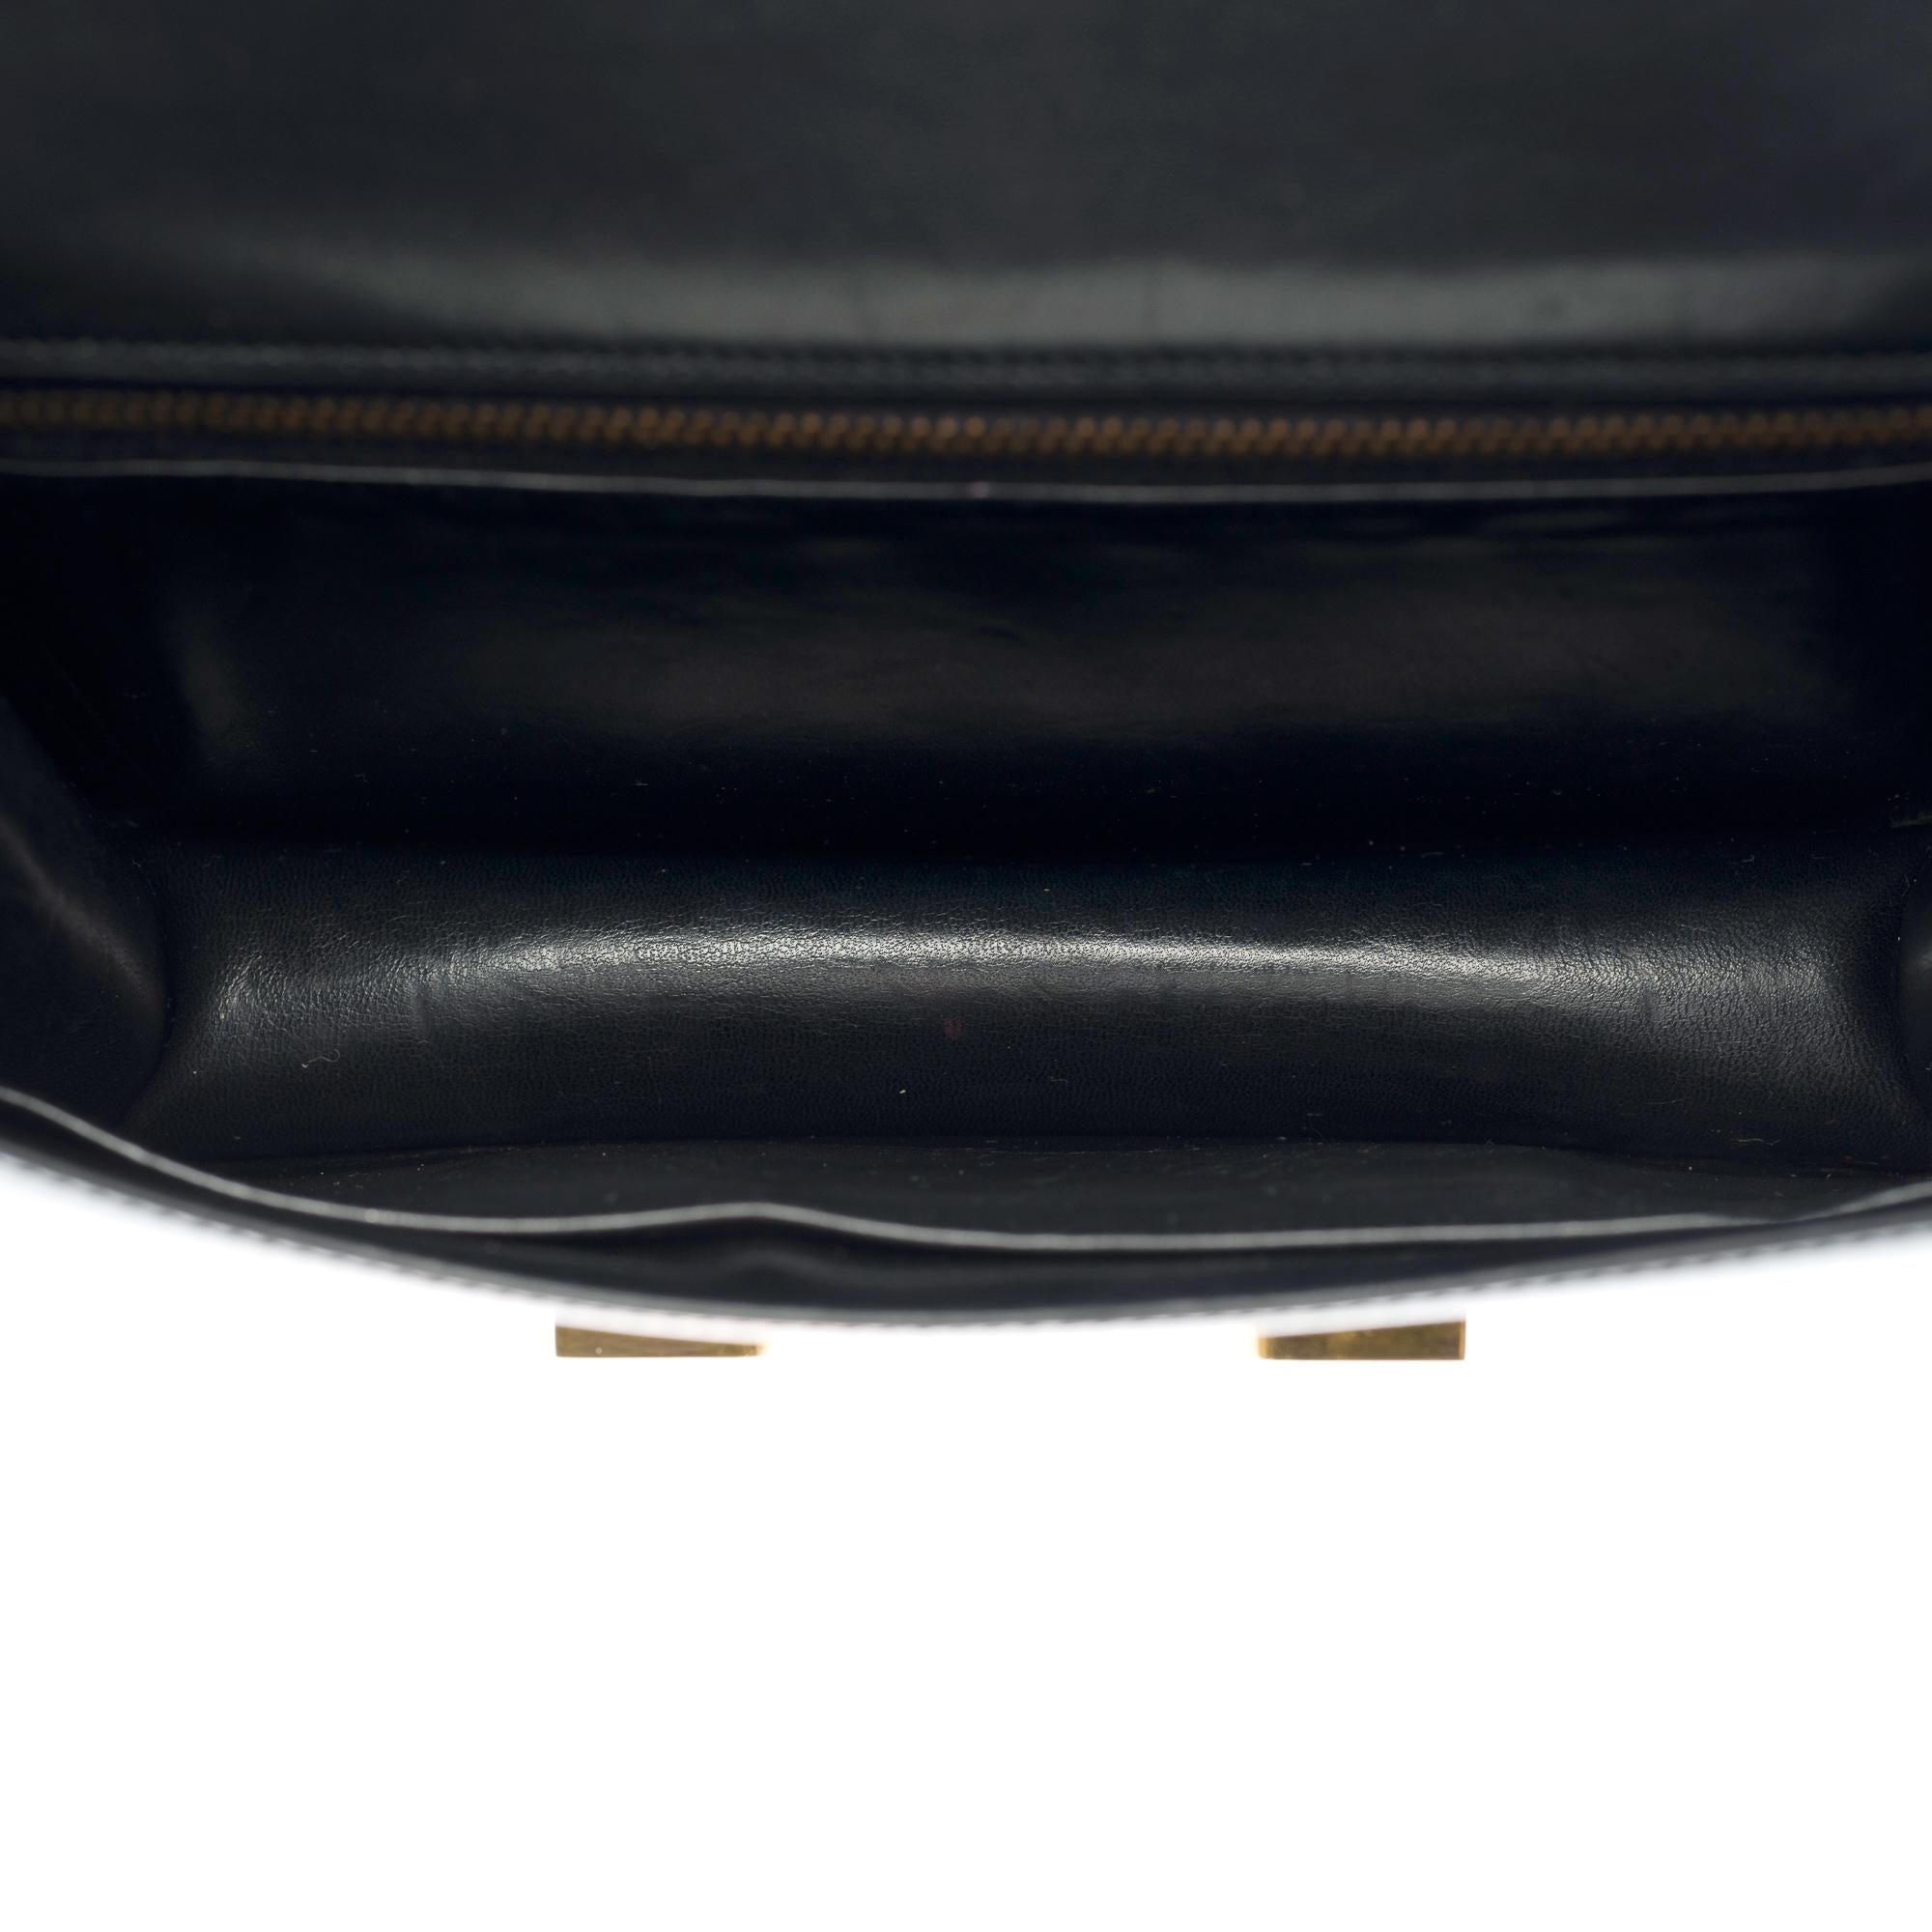 Stunning Hermes Constance 23 shoulder bag in black calfskin box leather, GHW 2